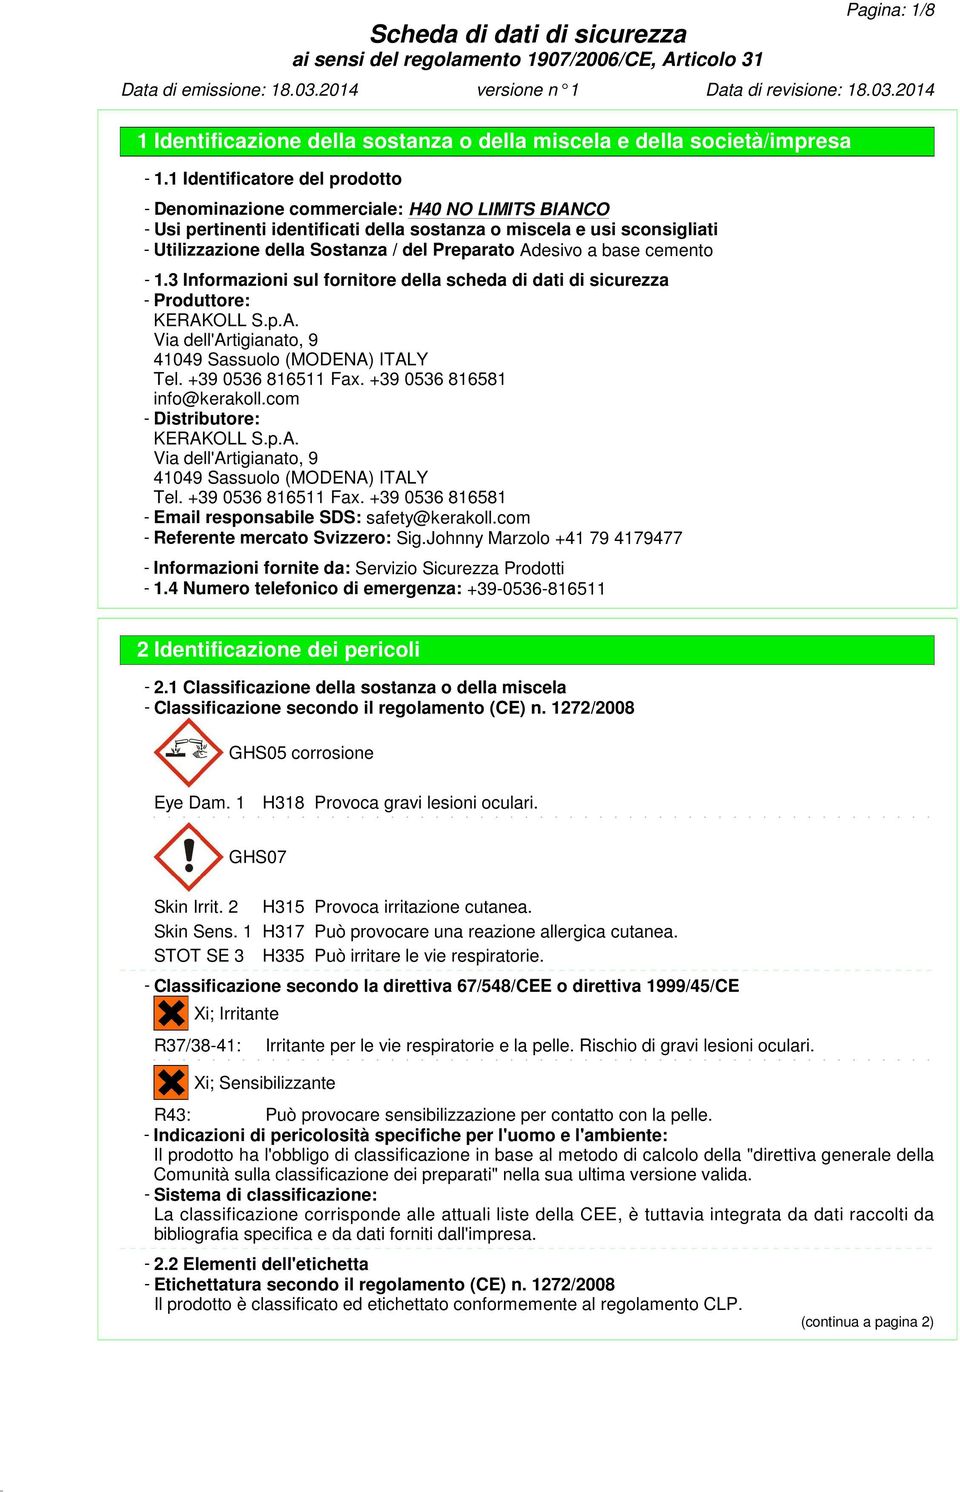 3 Informazioni sul fornitore della scheda di dati di sicurezza - Produttore: KERAKOLL S.p.A. Via dell'artigianato, 9 41049 Sassuolo (MODENA) ITALY Tel. +39 0536 816511 Fax.